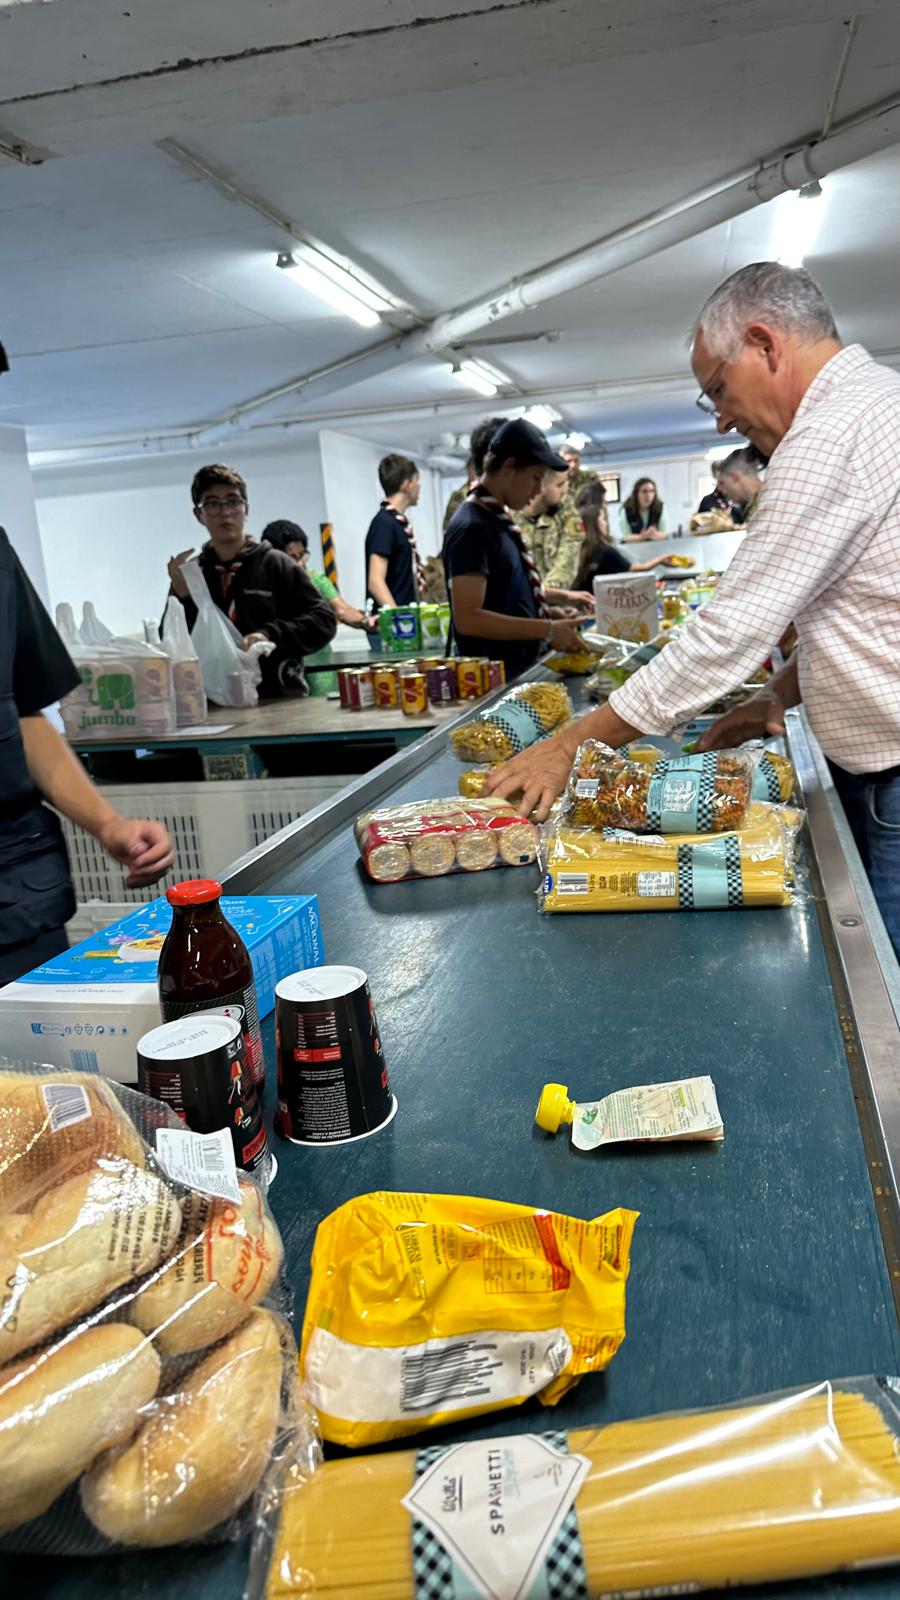 BA Algarve recolhe 113,16 toneladas de alimentos na campanha solidária nos supermercados